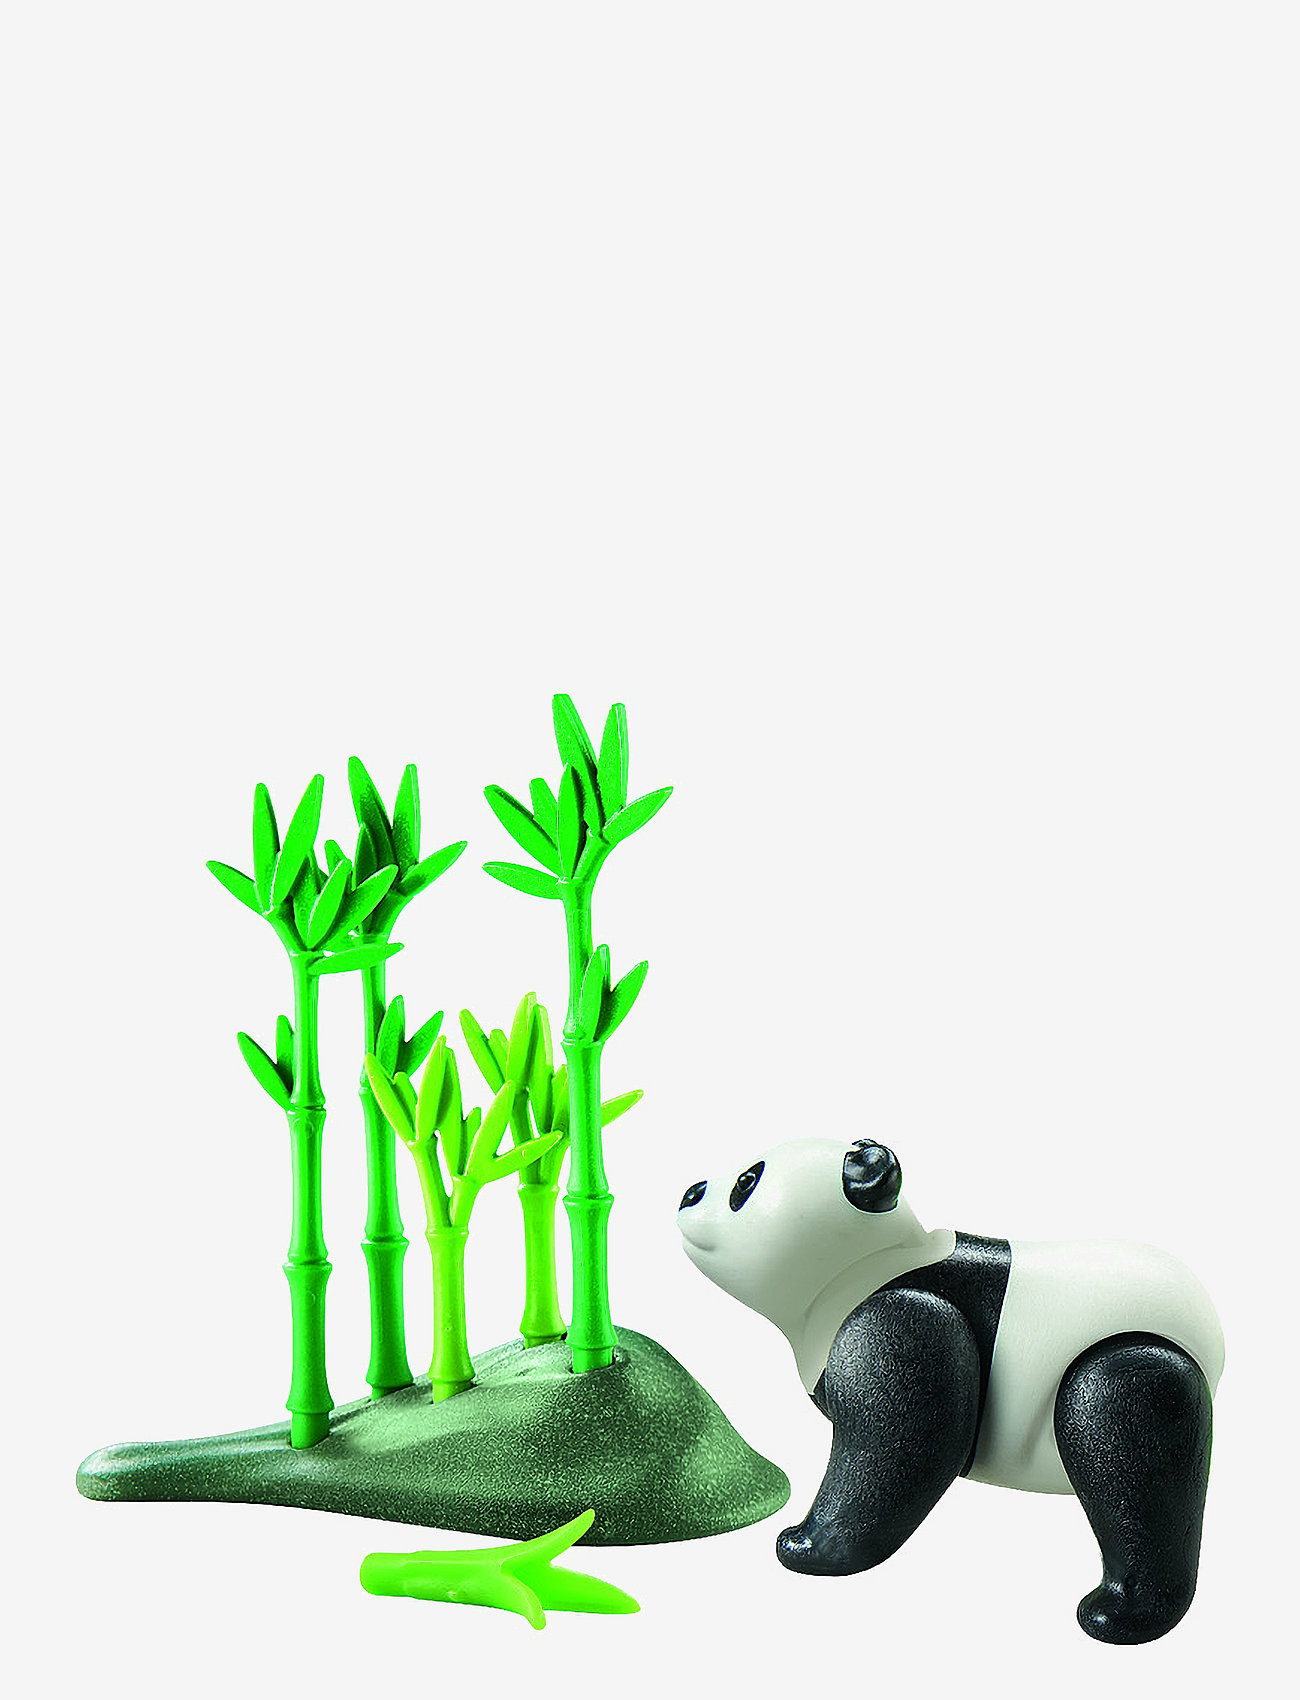 PLAYMOBIL - PLAYMOBIL Wiltopia Panda - 71060 - playmobil wiltopia - multicolored - 0